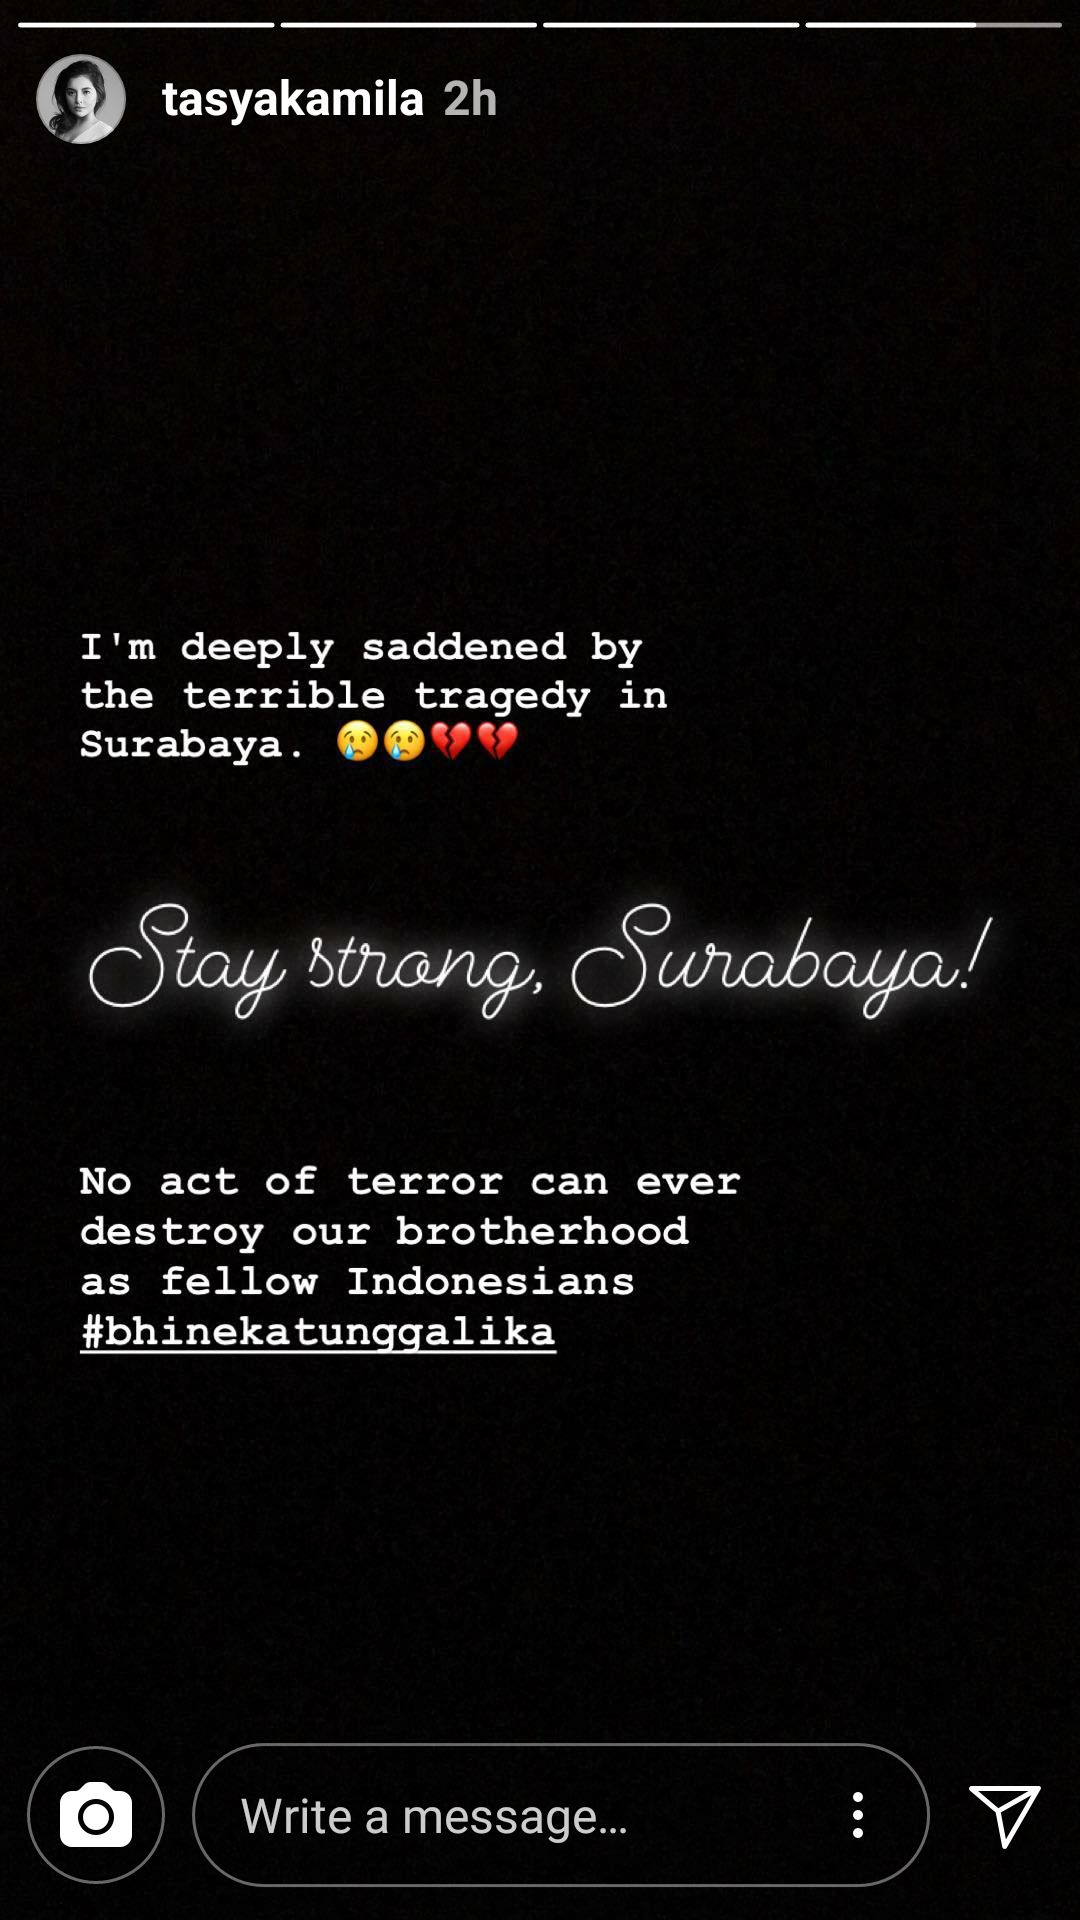 10 Tasya Kamila turut bersedih dengan tragedi bom Surabaya ia yakin teror tak akan bisa mengoyak persatuan bangsa